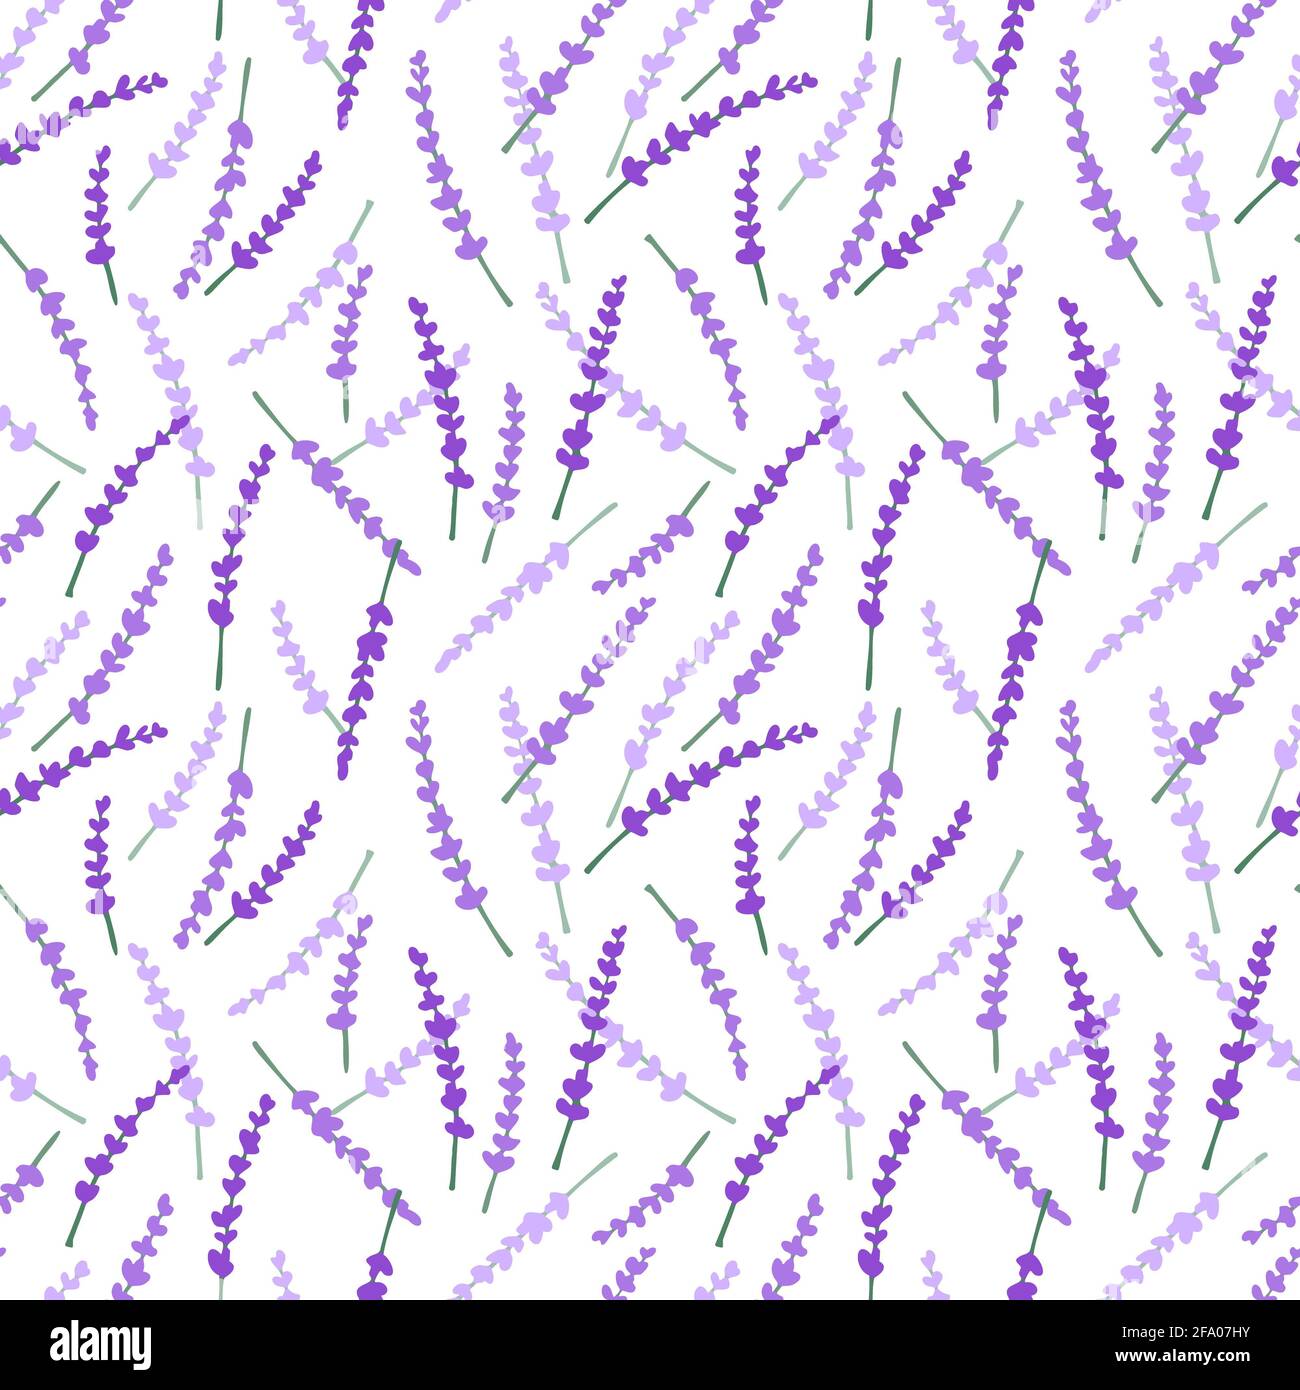 30 Cute Simple Purple Wallpapers  WallpaperSafari